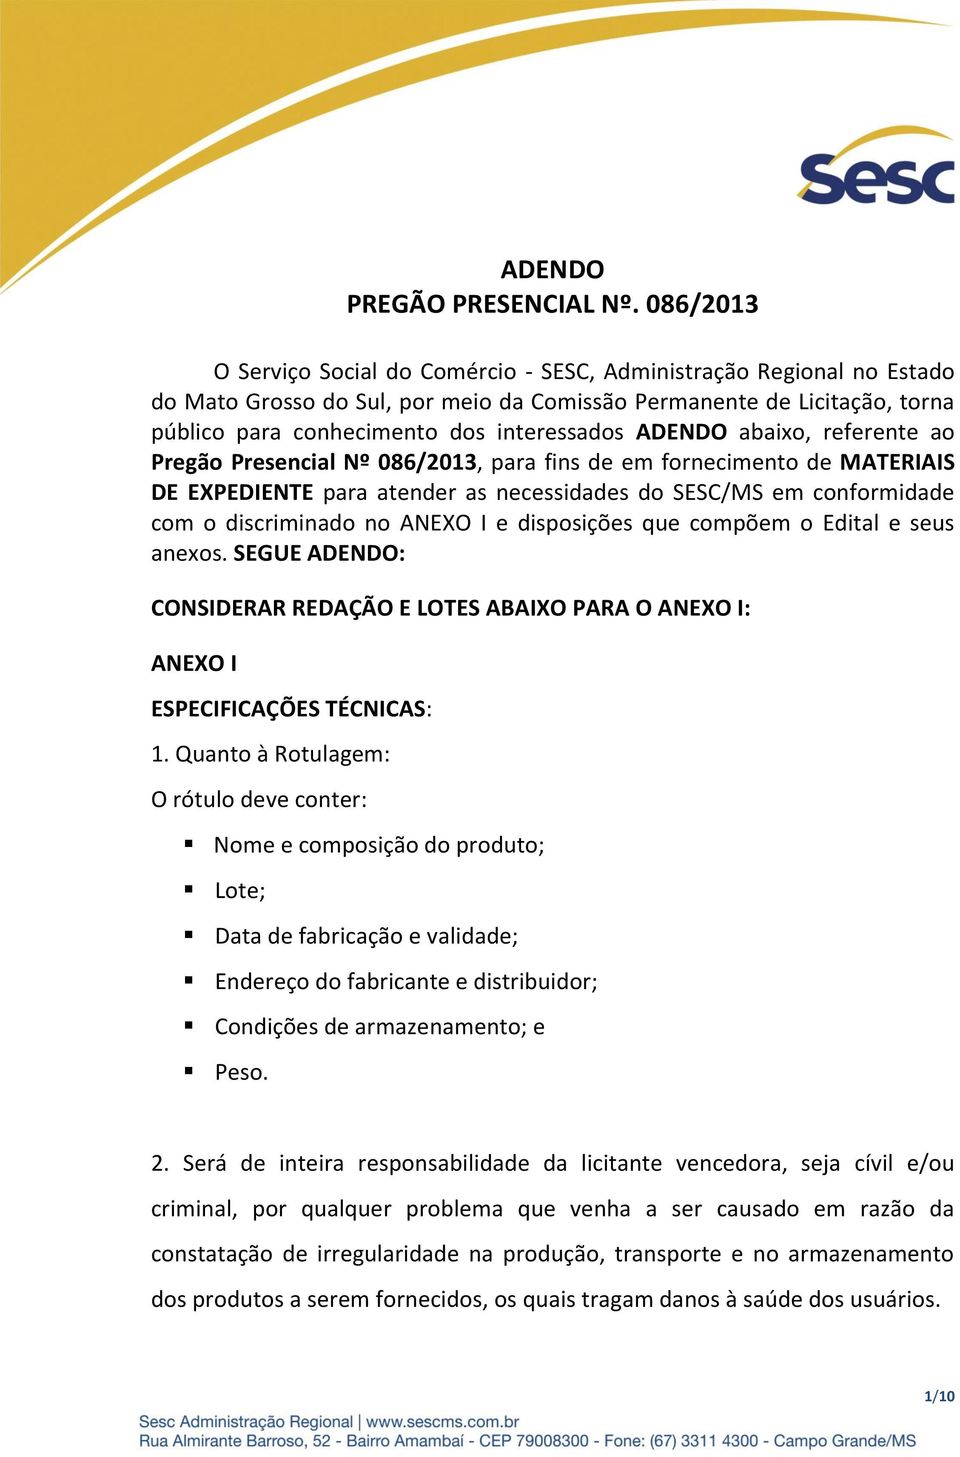 ADENDO abaixo, referente ao Pregão Presencial Nº 086/2013, para fins de em fornecimento de MATERIAIS DE EXPEDIENTE para atender as necessidades do SESC/MS em conformidade com o discriminado no ANEXO